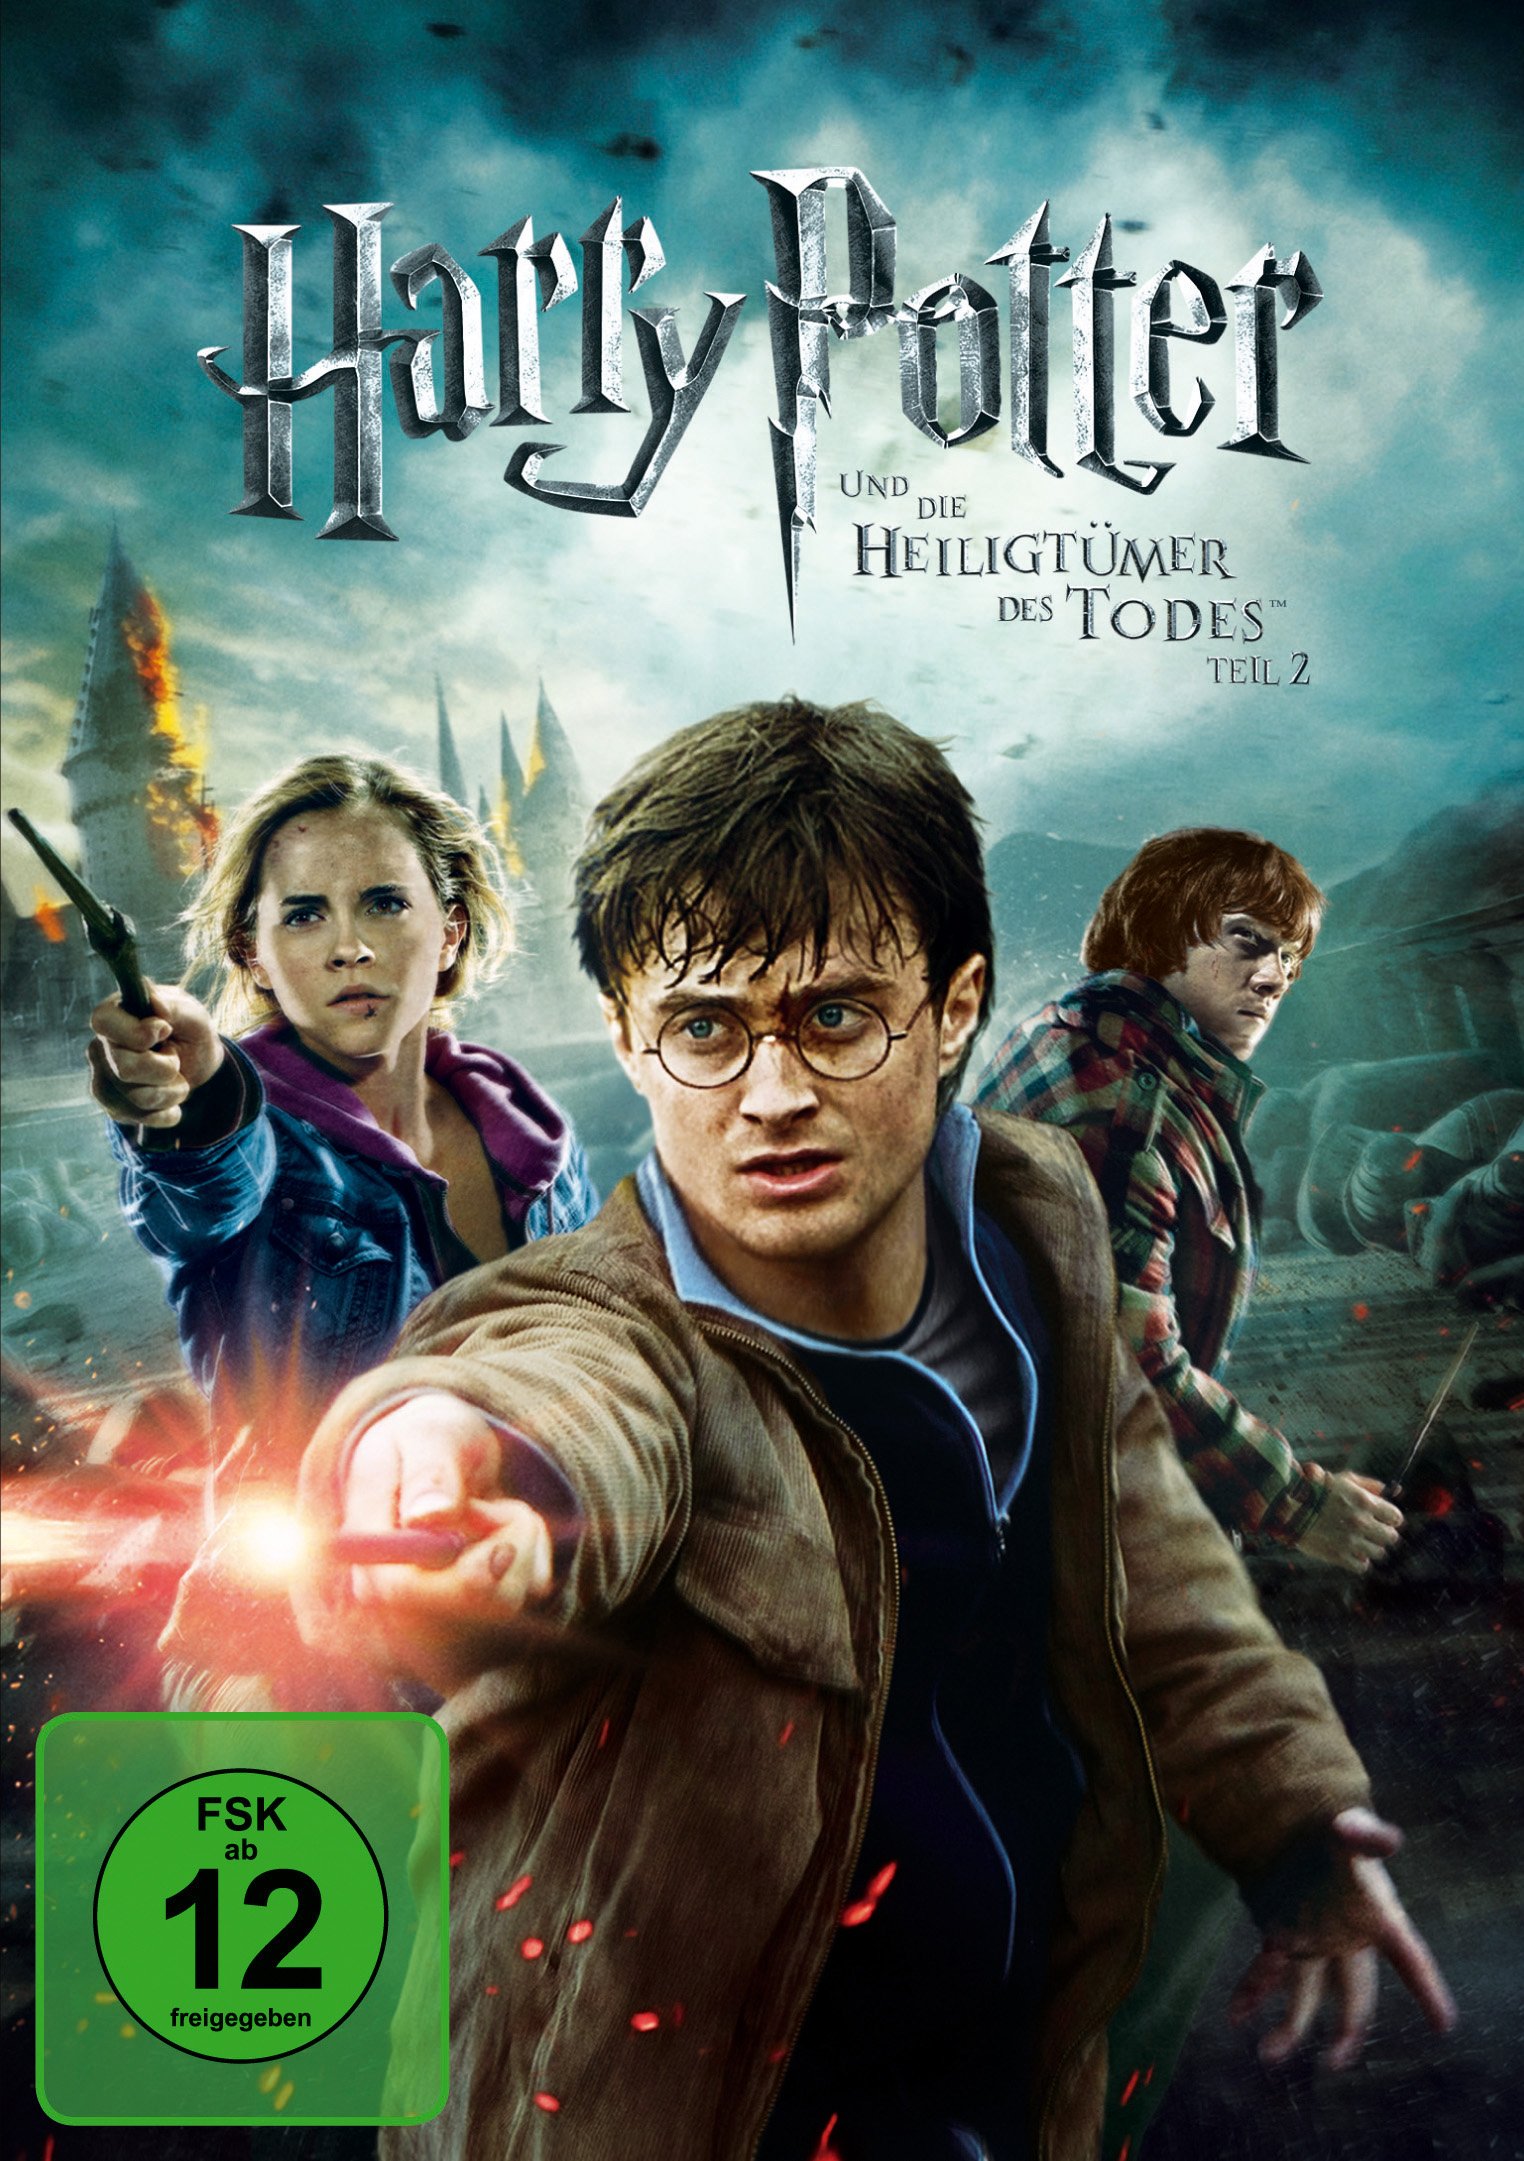 Film Harry Potter und die Heiligtümer des Todes - Teil 2 [DVD] von David  Yates gebraucht kaufen bei Melando Schweiz